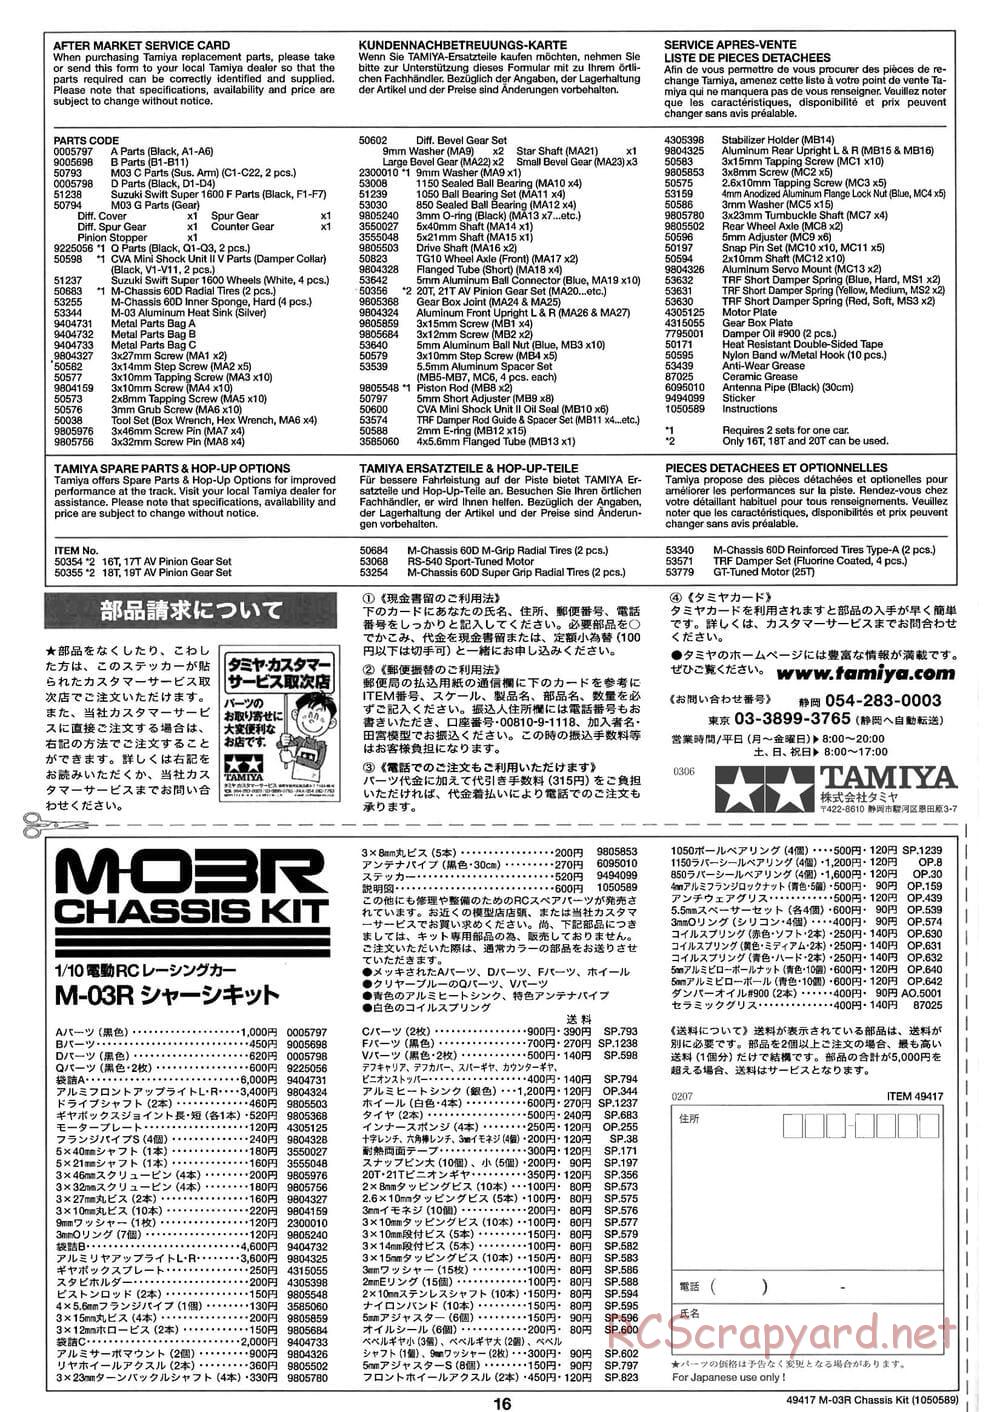 Tamiya - M-03R Chassis - Manual - Page 16